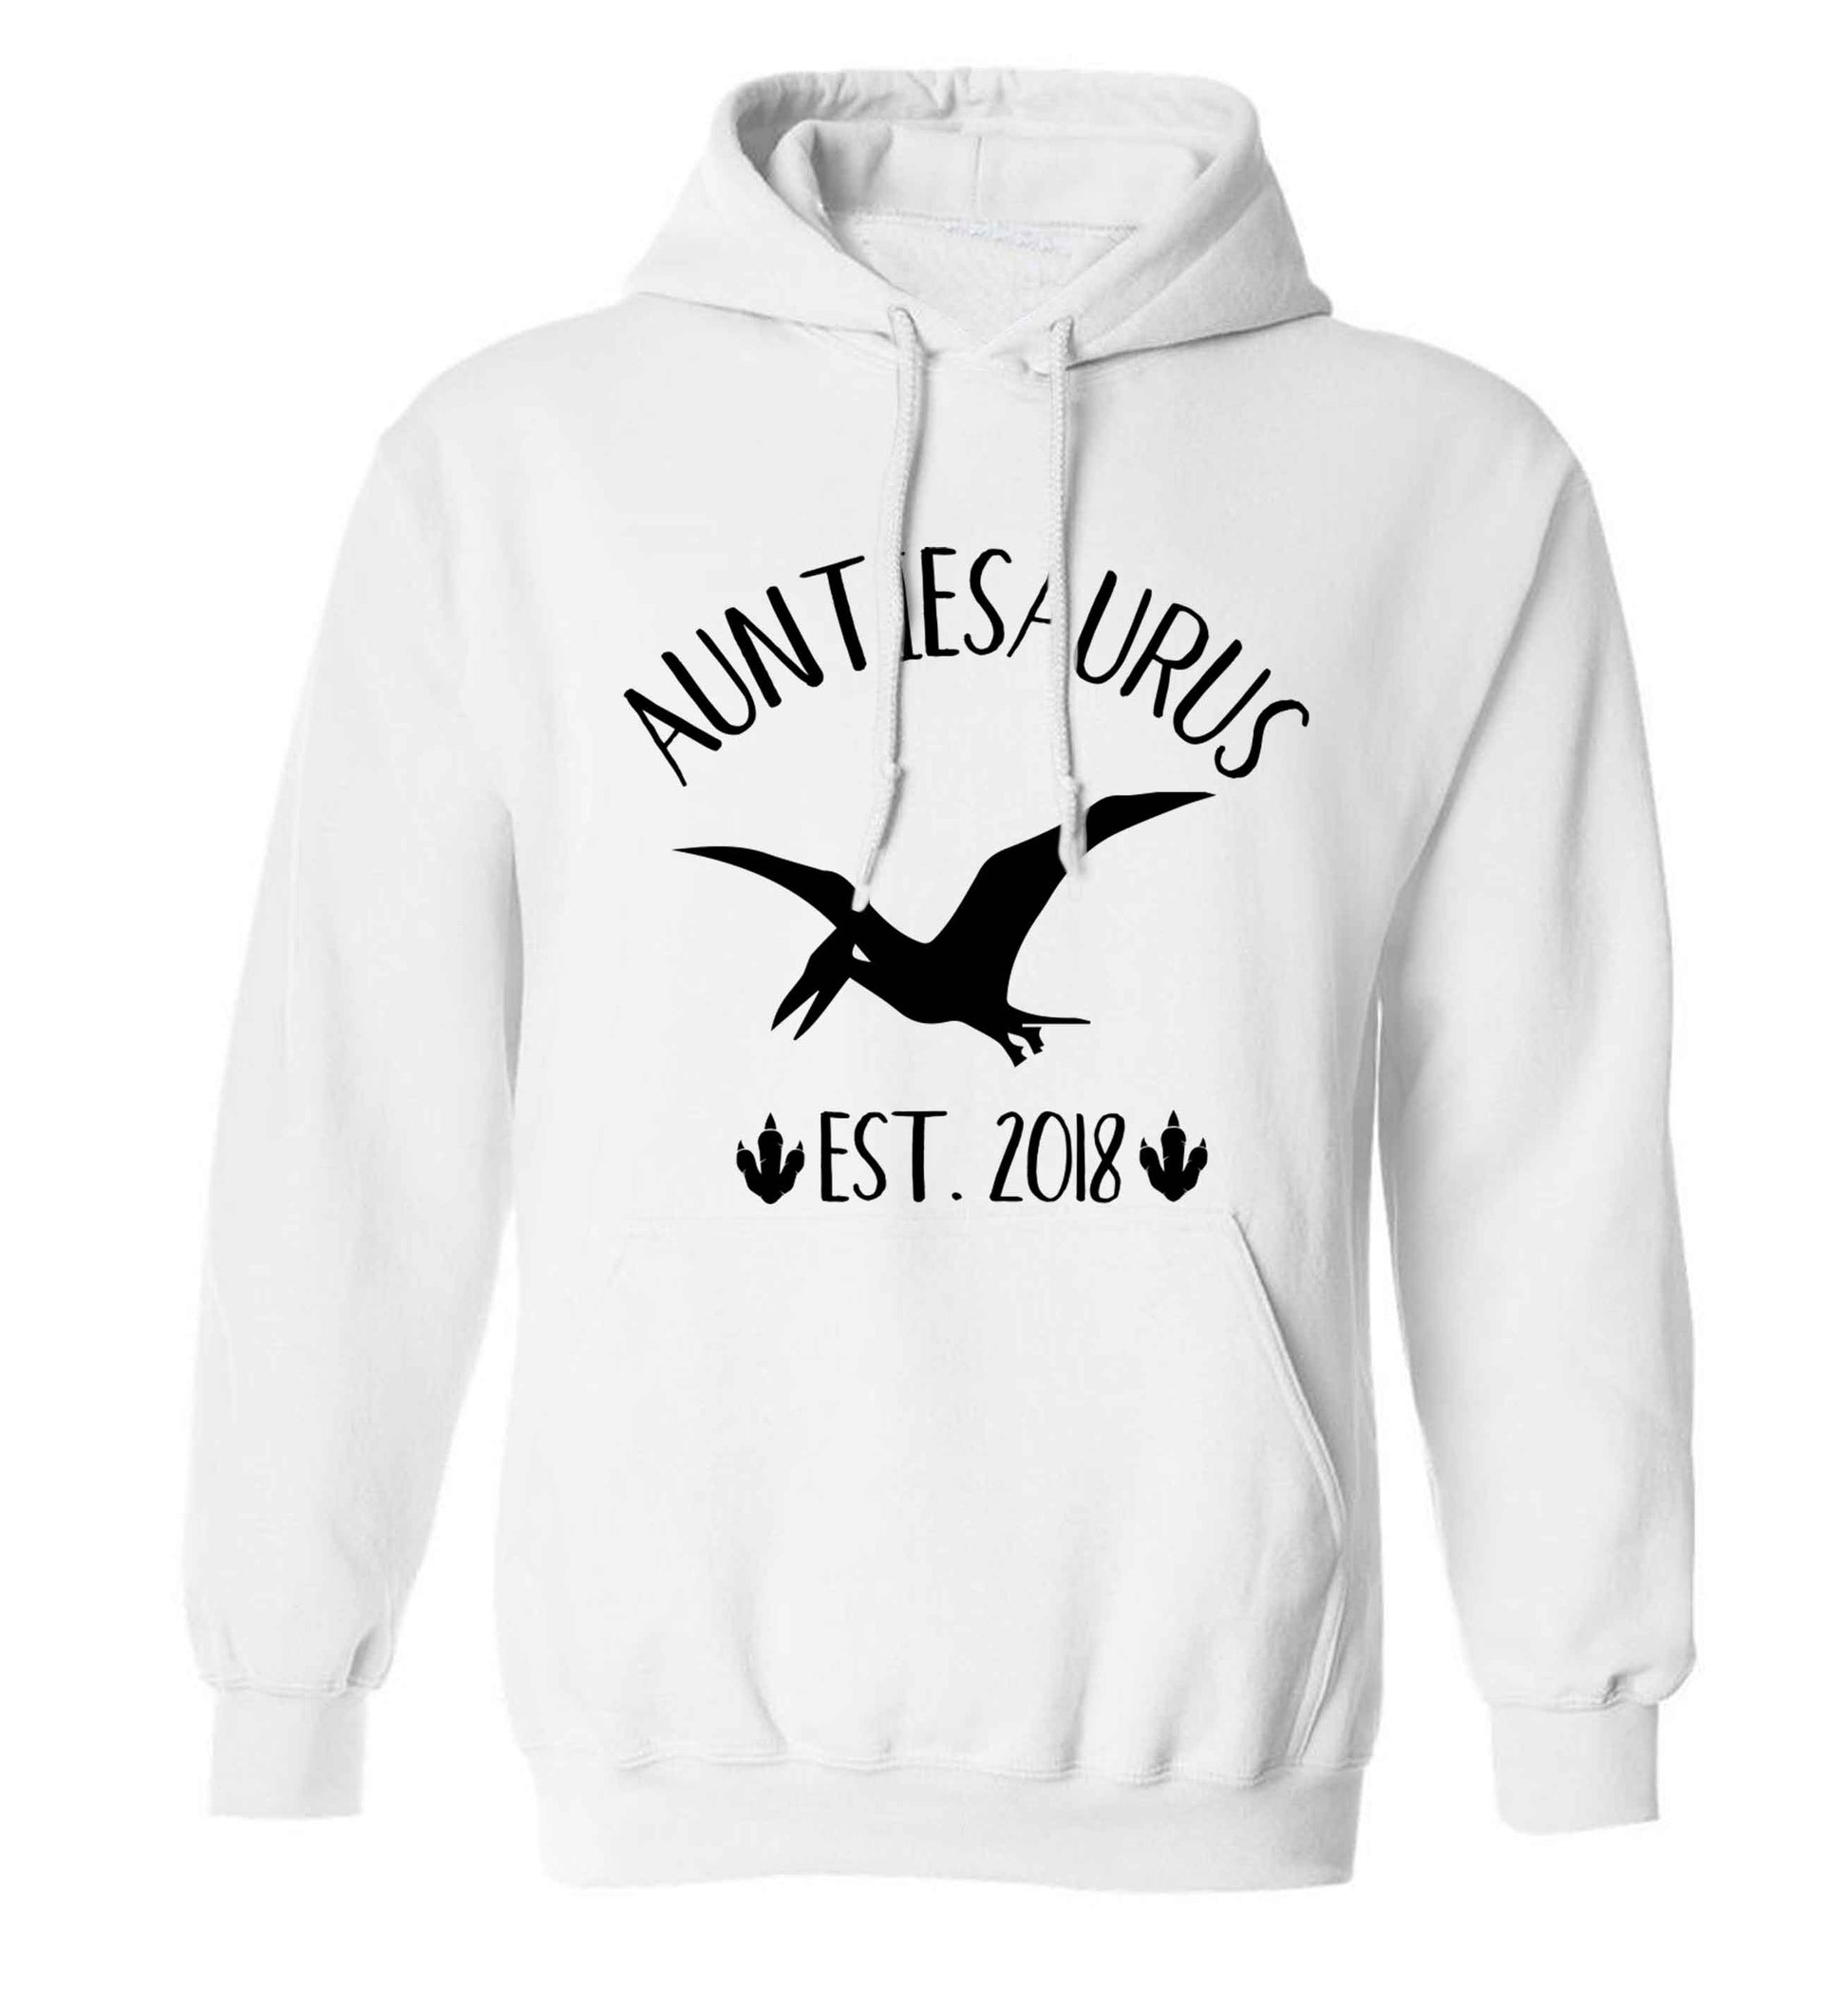 Personalised auntiesaurus since (custom date) adults unisex white hoodie 2XL